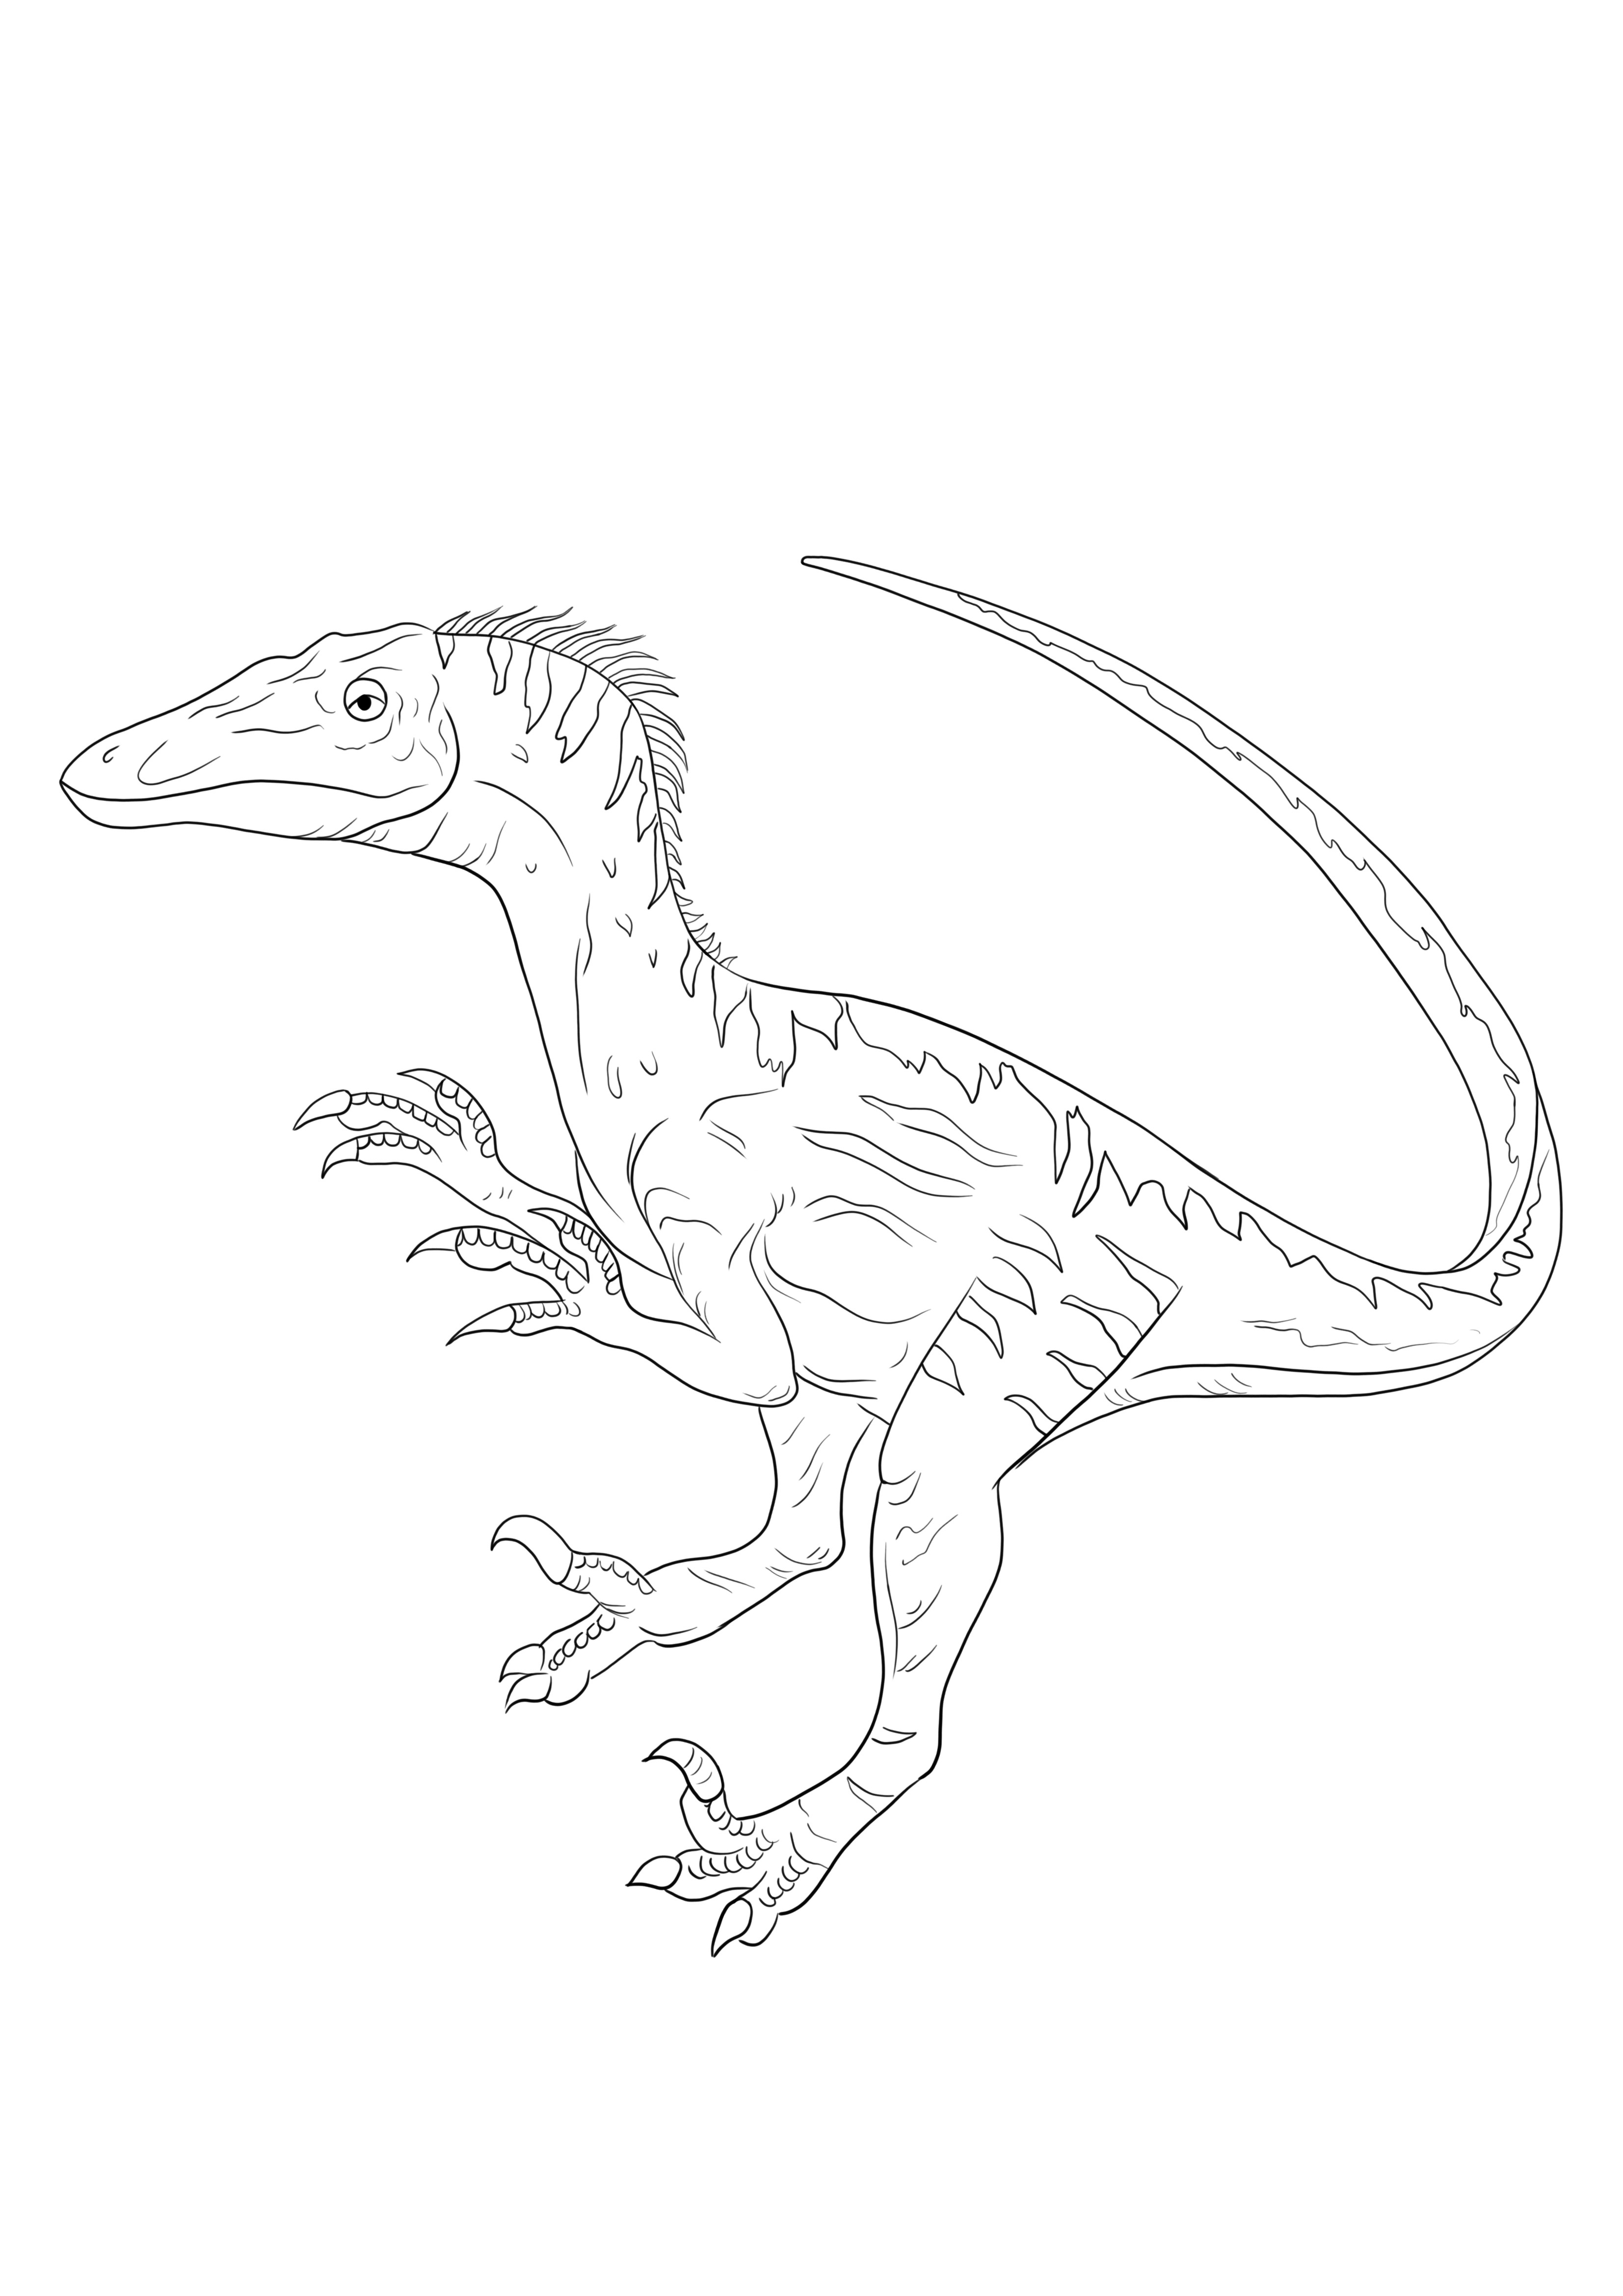 Big Velociraptor om gratis te downloaden en om een kleurenfoto te maken kleurplaat